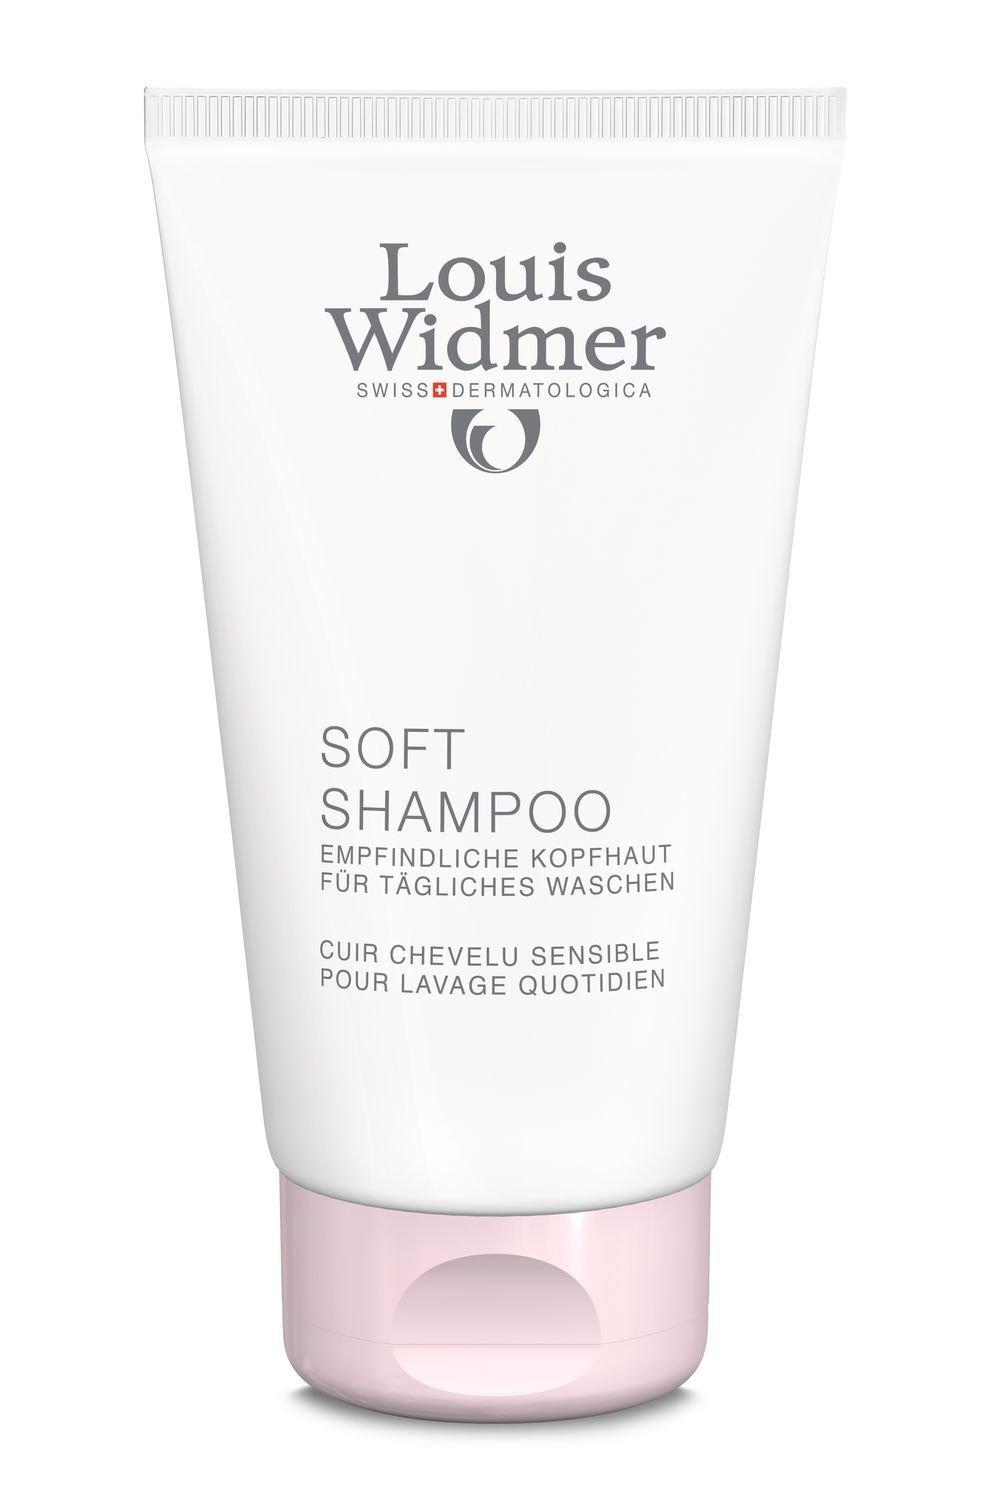 Louis Widmer Soft Shampoo parf Soft Shampoo parfümiert 